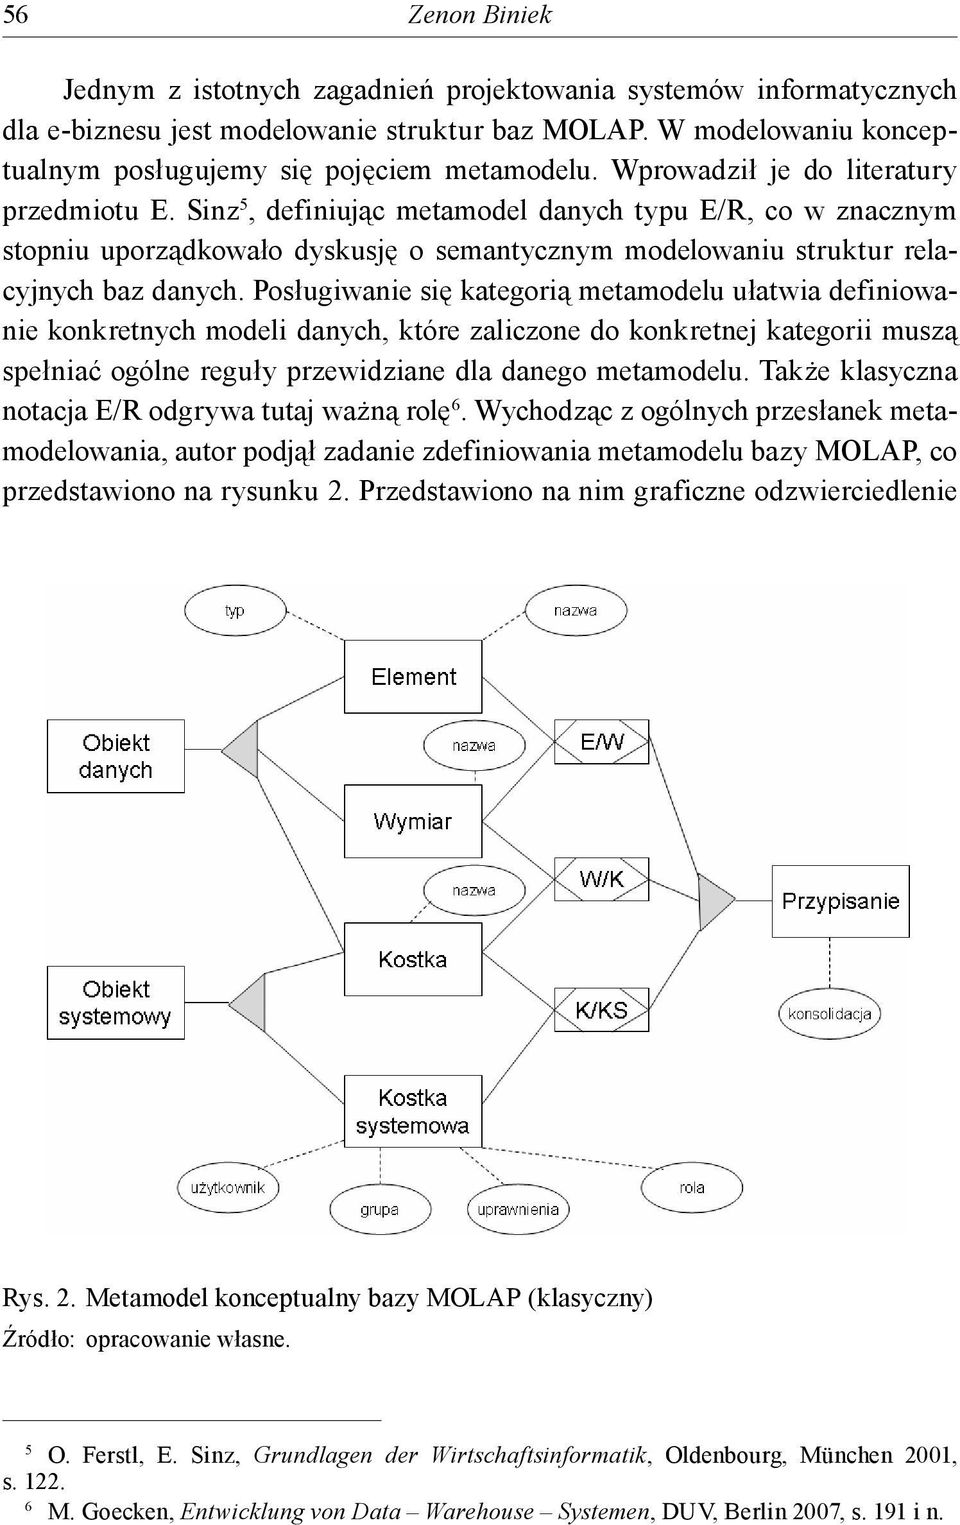 Posługiwanie się kategorią metamodelu ułatwia definiowanie konkretnych modeli danych, które zaliczone do konkretnej kategorii muszą spełniać ogólne reguły przewidziane dla danego metamodelu.